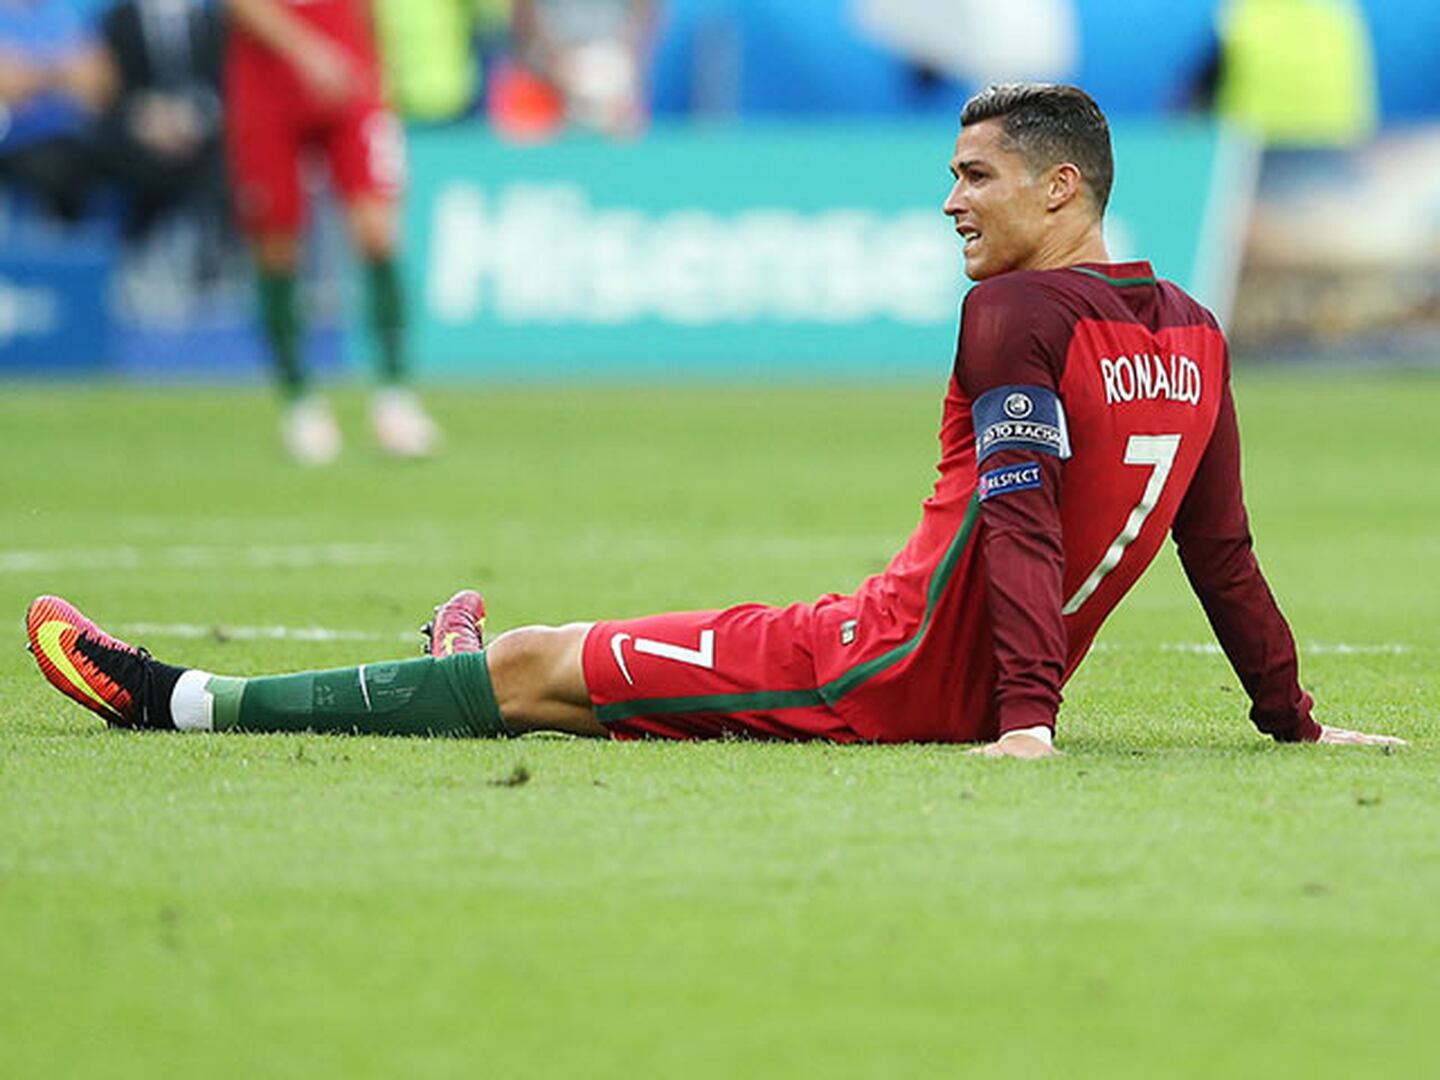 La magnitud de la lesión de Cristiano Ronaldo